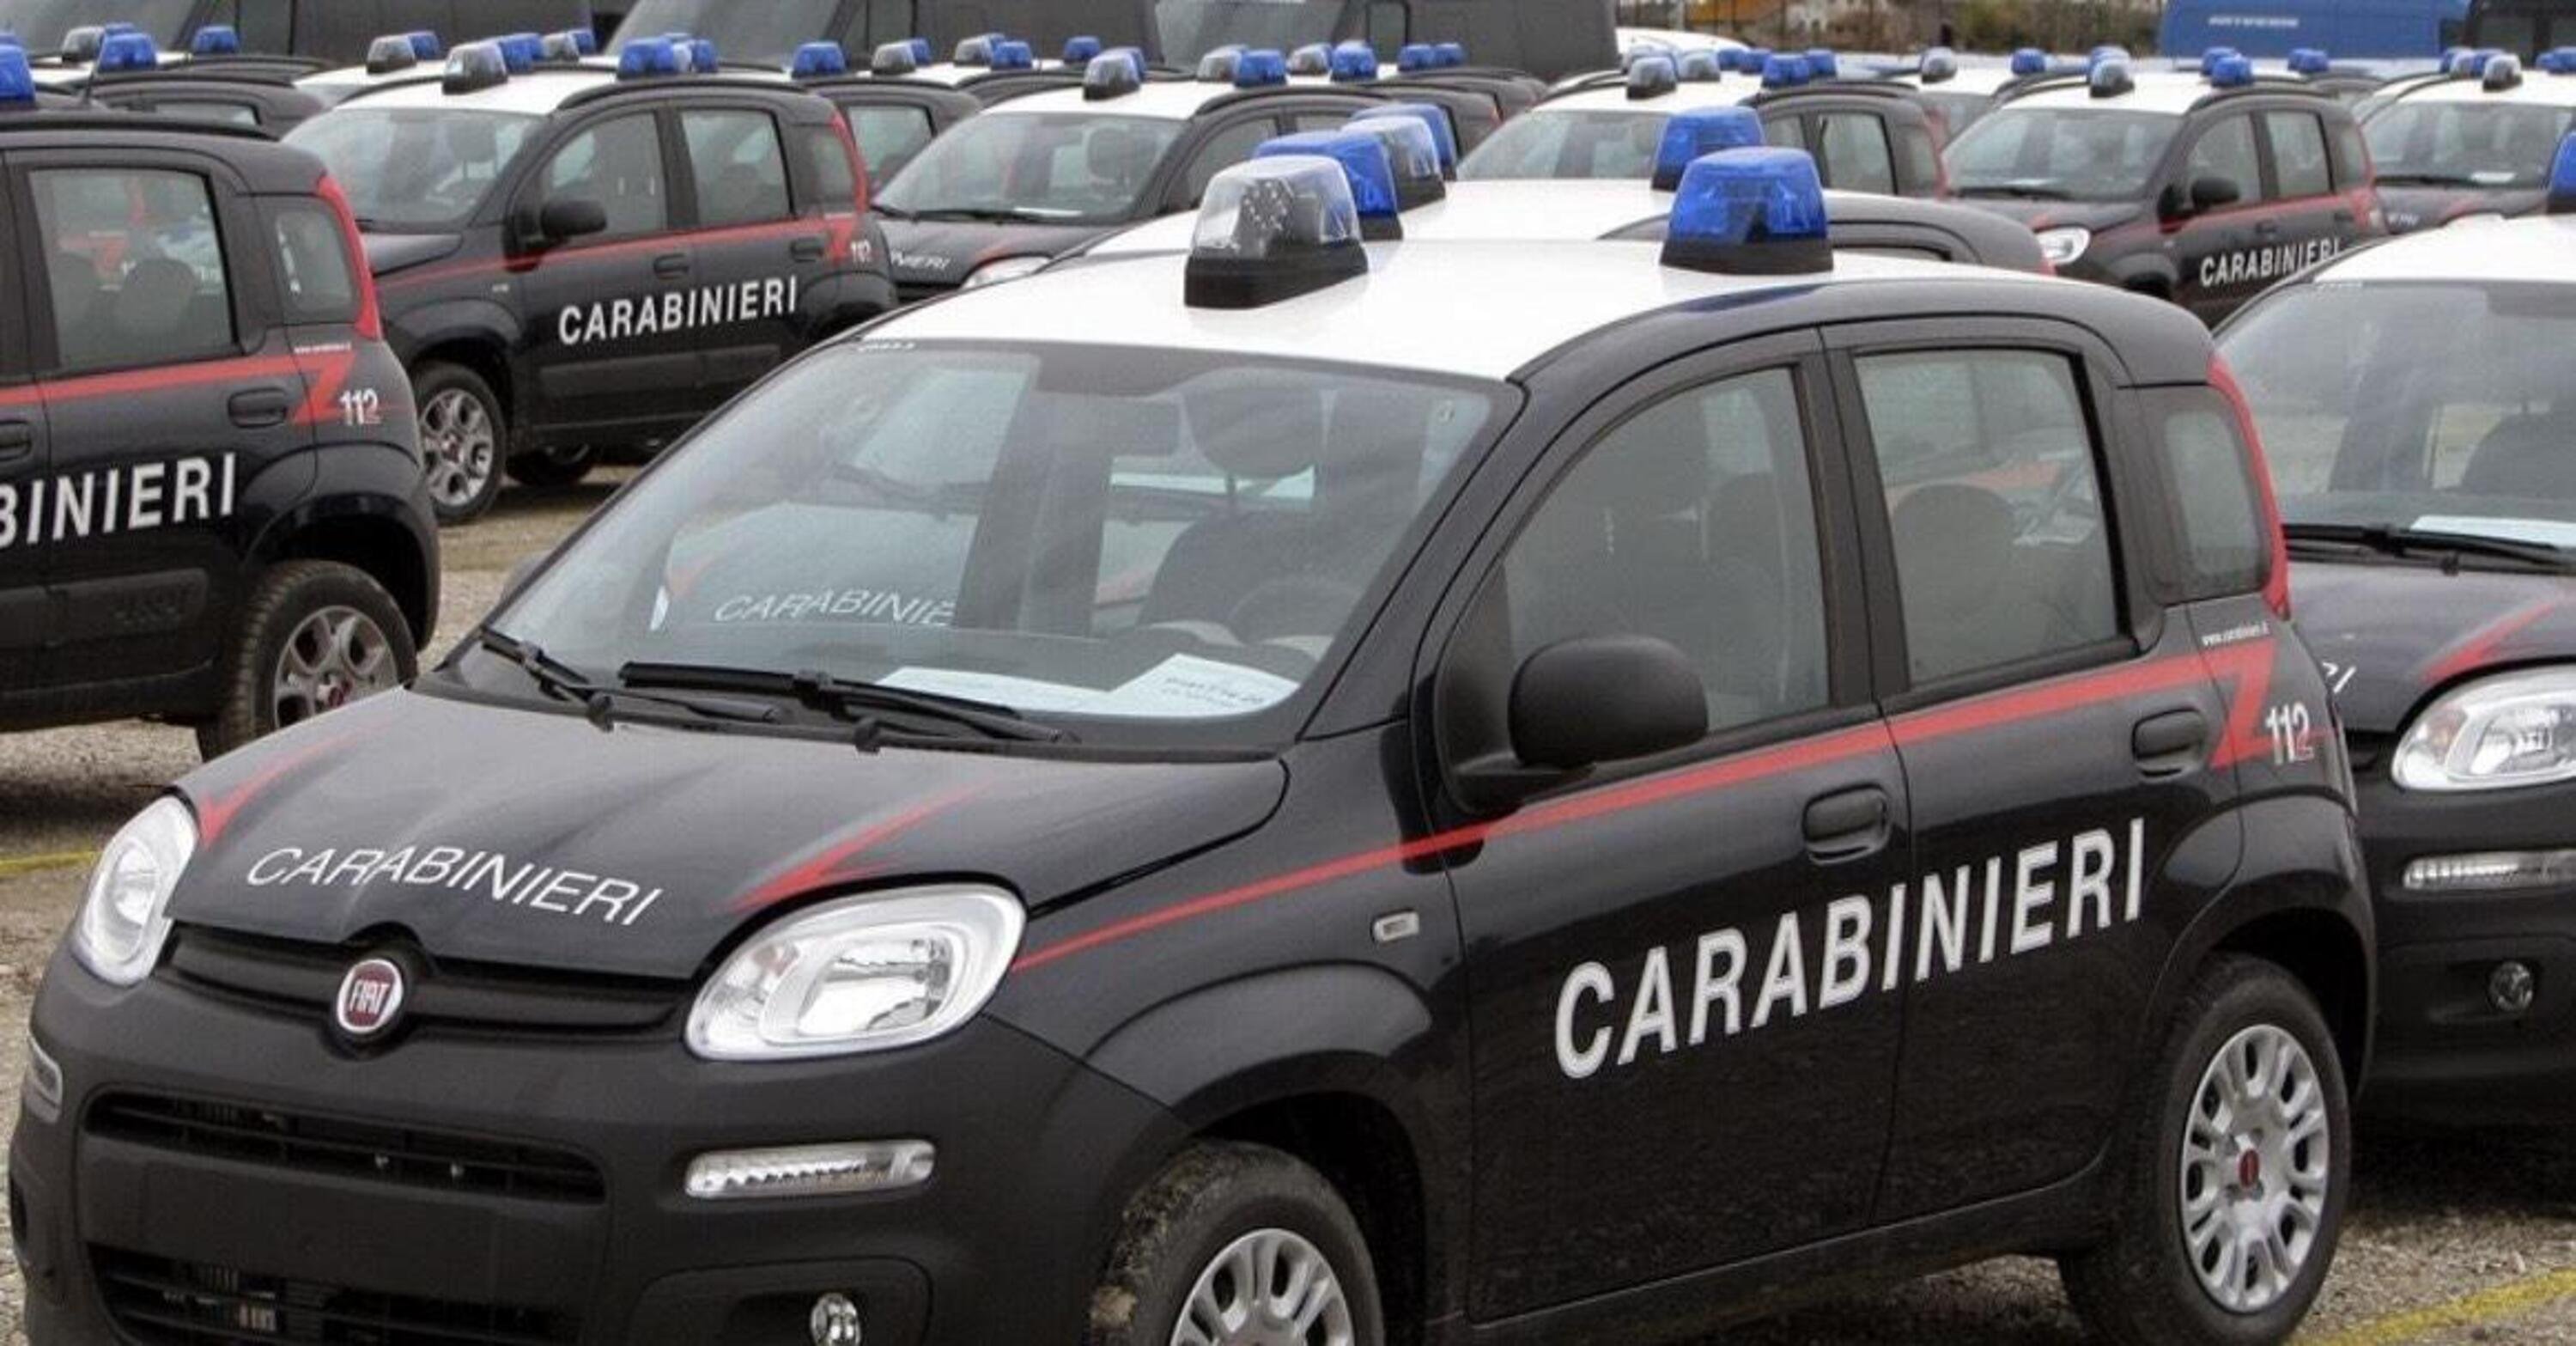 La BMW scappa, la Panda dei Carabinieri insegue a tutta manetta